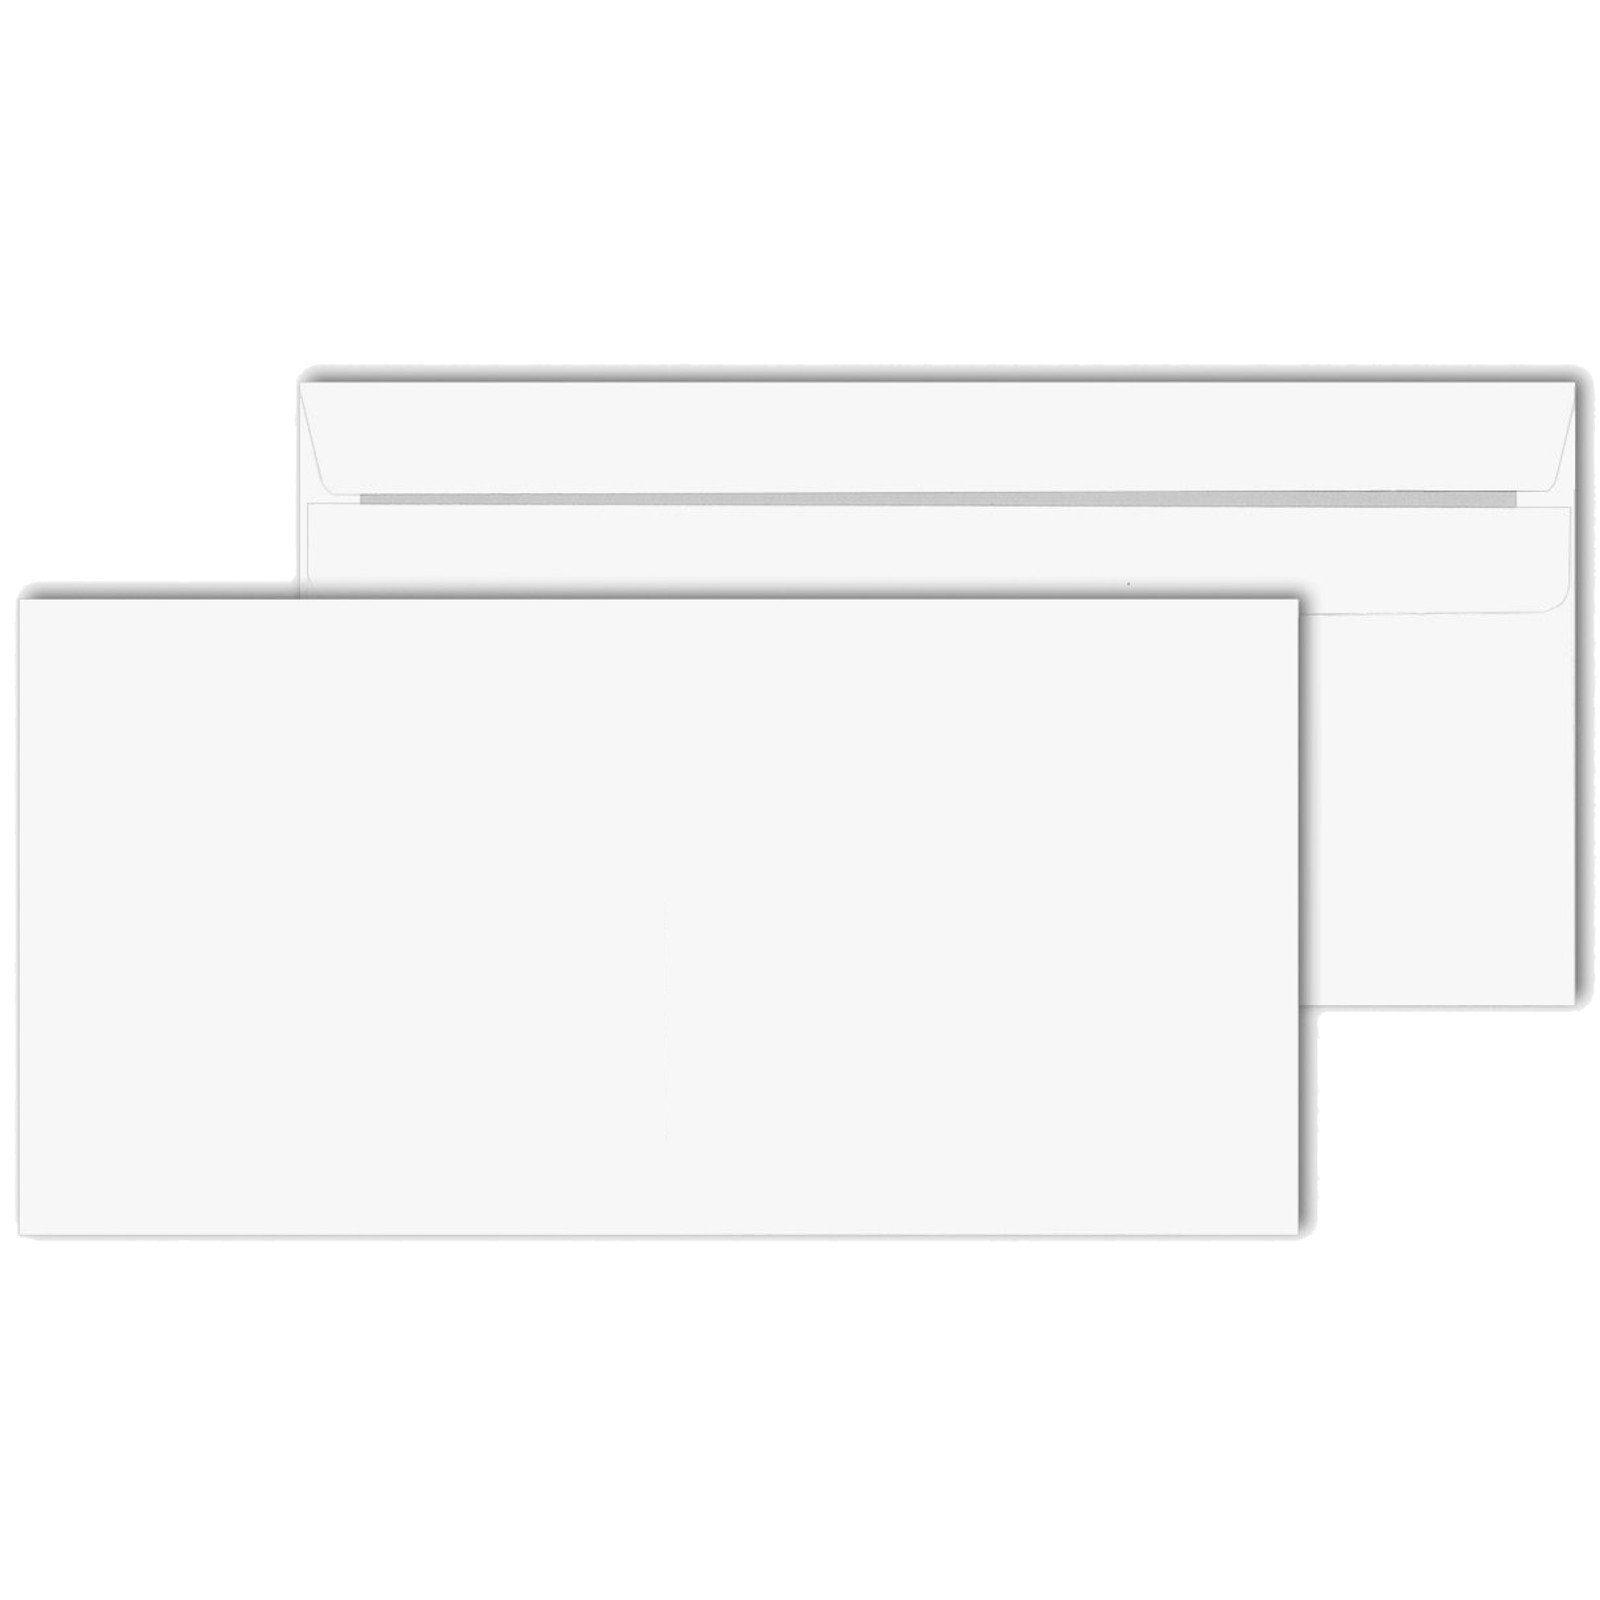 KK Verpackungen Briefumschlag, Umschlag Kuverts DIN lang 110 x 220 mm  Selbstklebung ohne Fenster Weiß online kaufen | OTTO